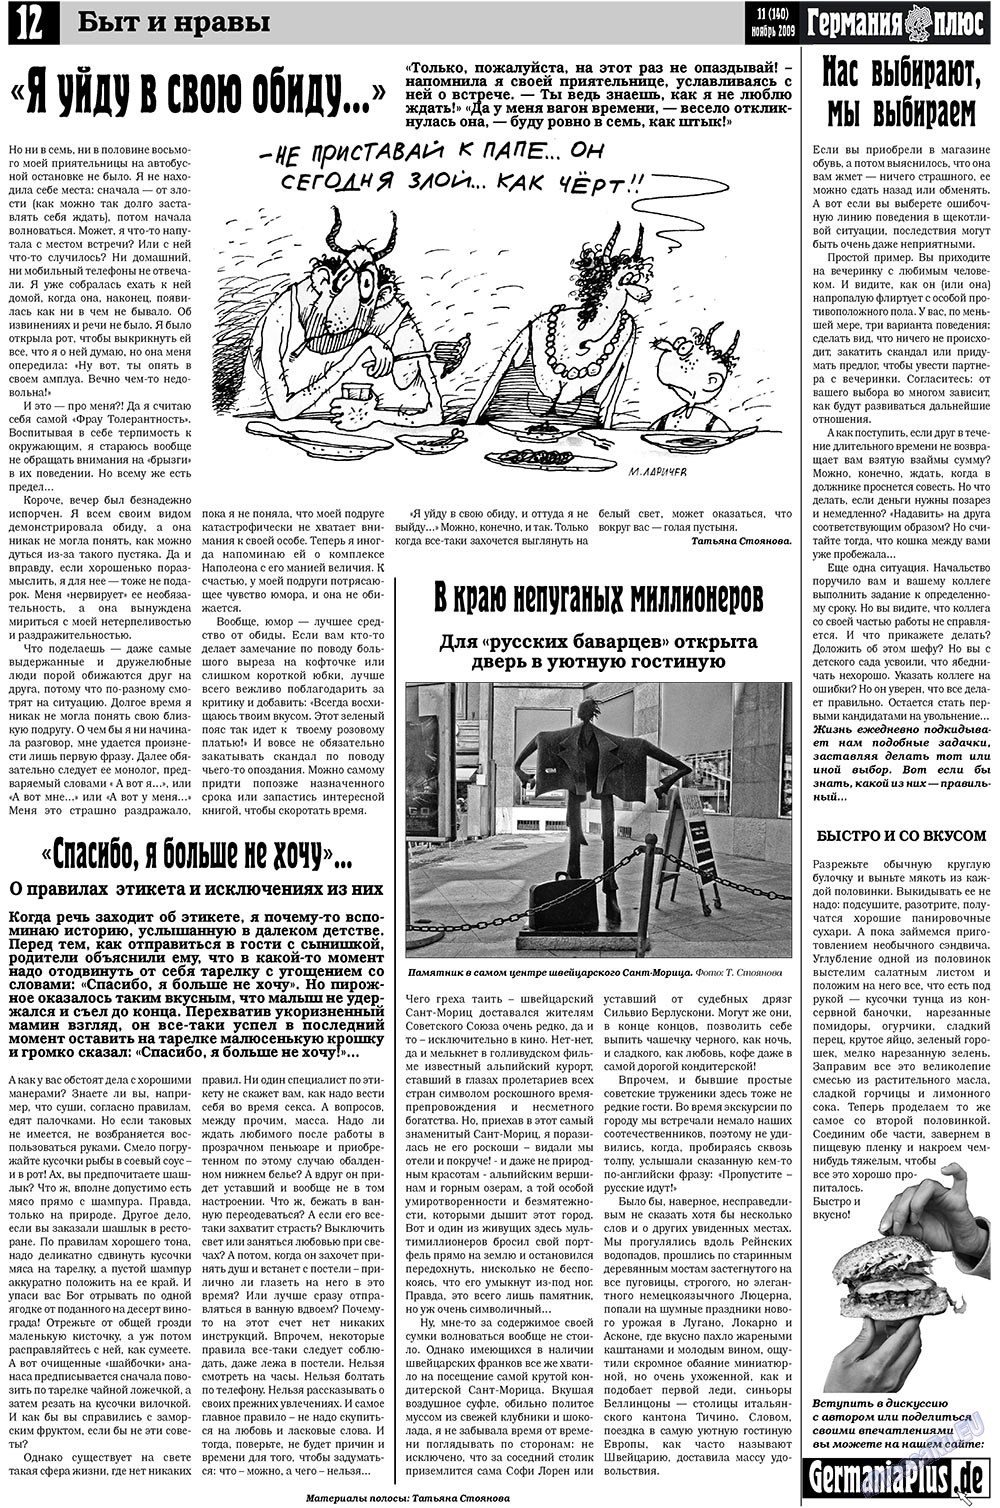 Германия плюс (газета). 2009 год, номер 11, стр. 12